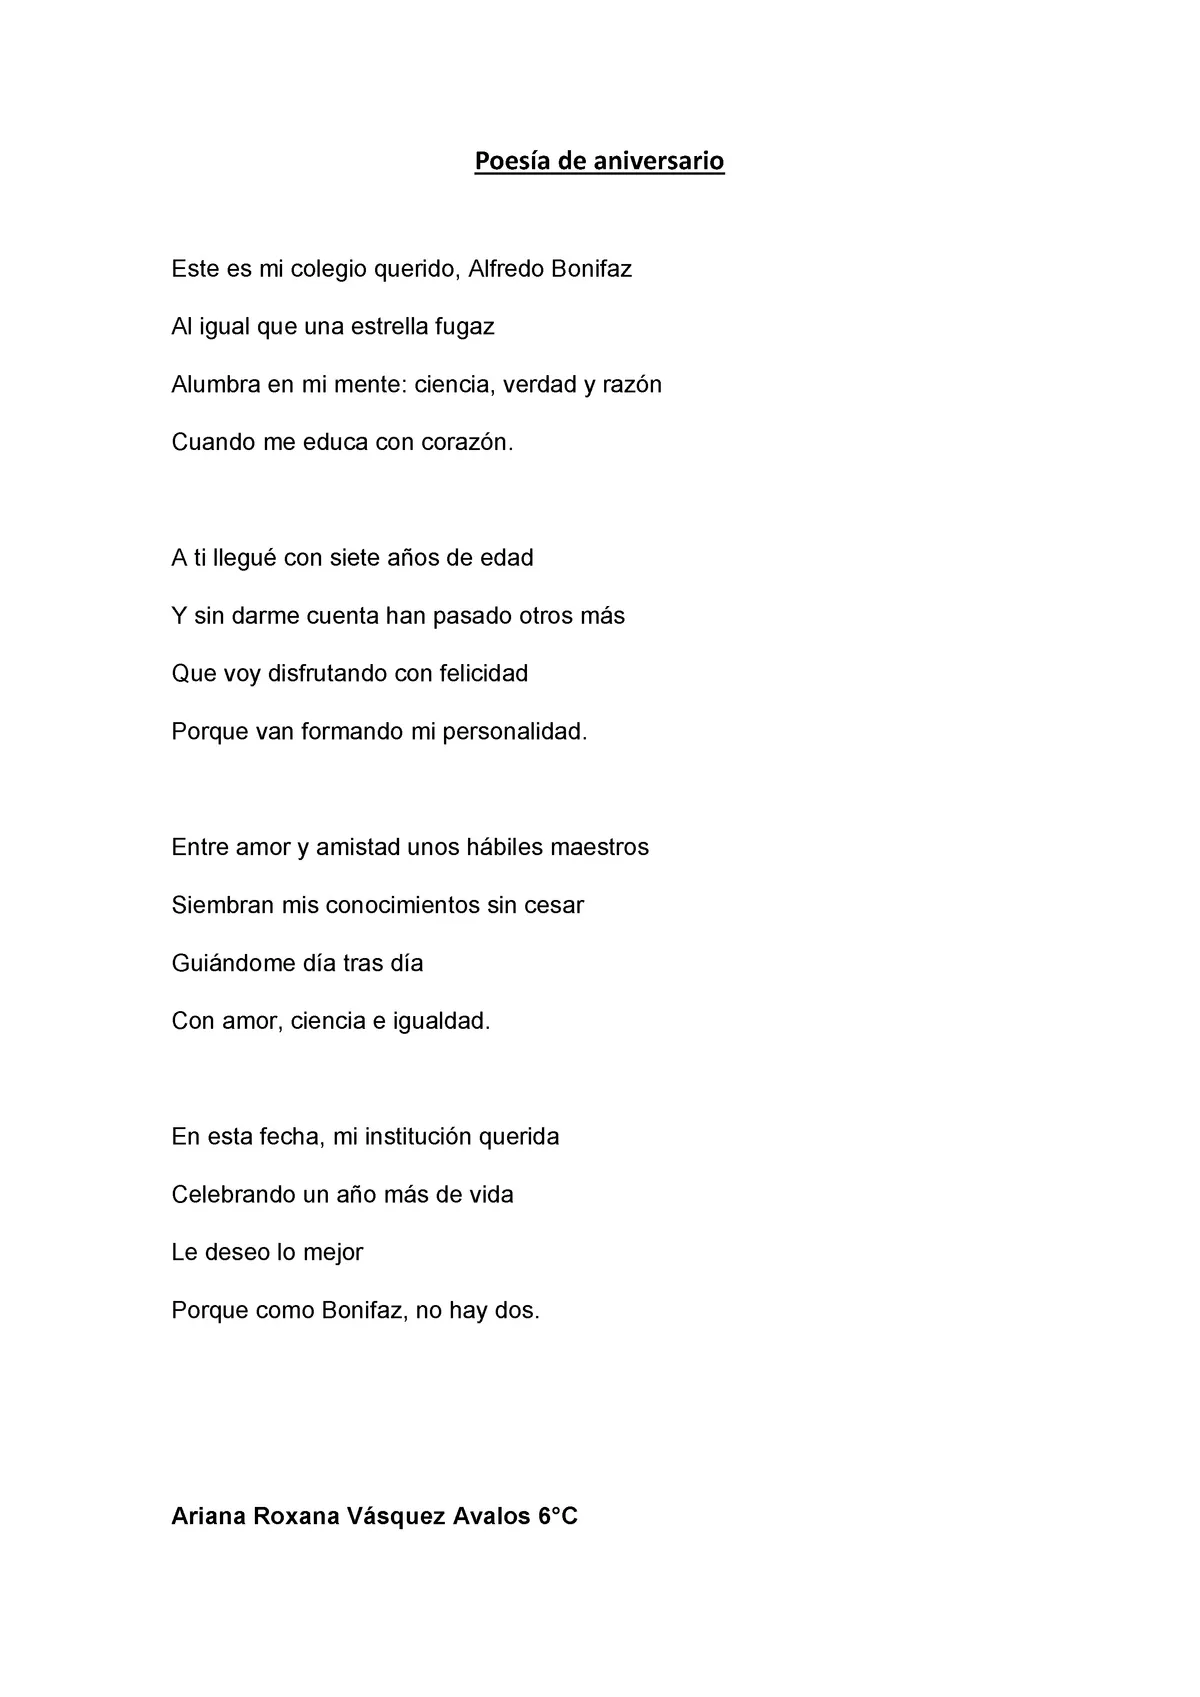 Poesía de aniversario bonifaz que contiene rimas bien hechas para redactar  - Introducción a las - Studocu